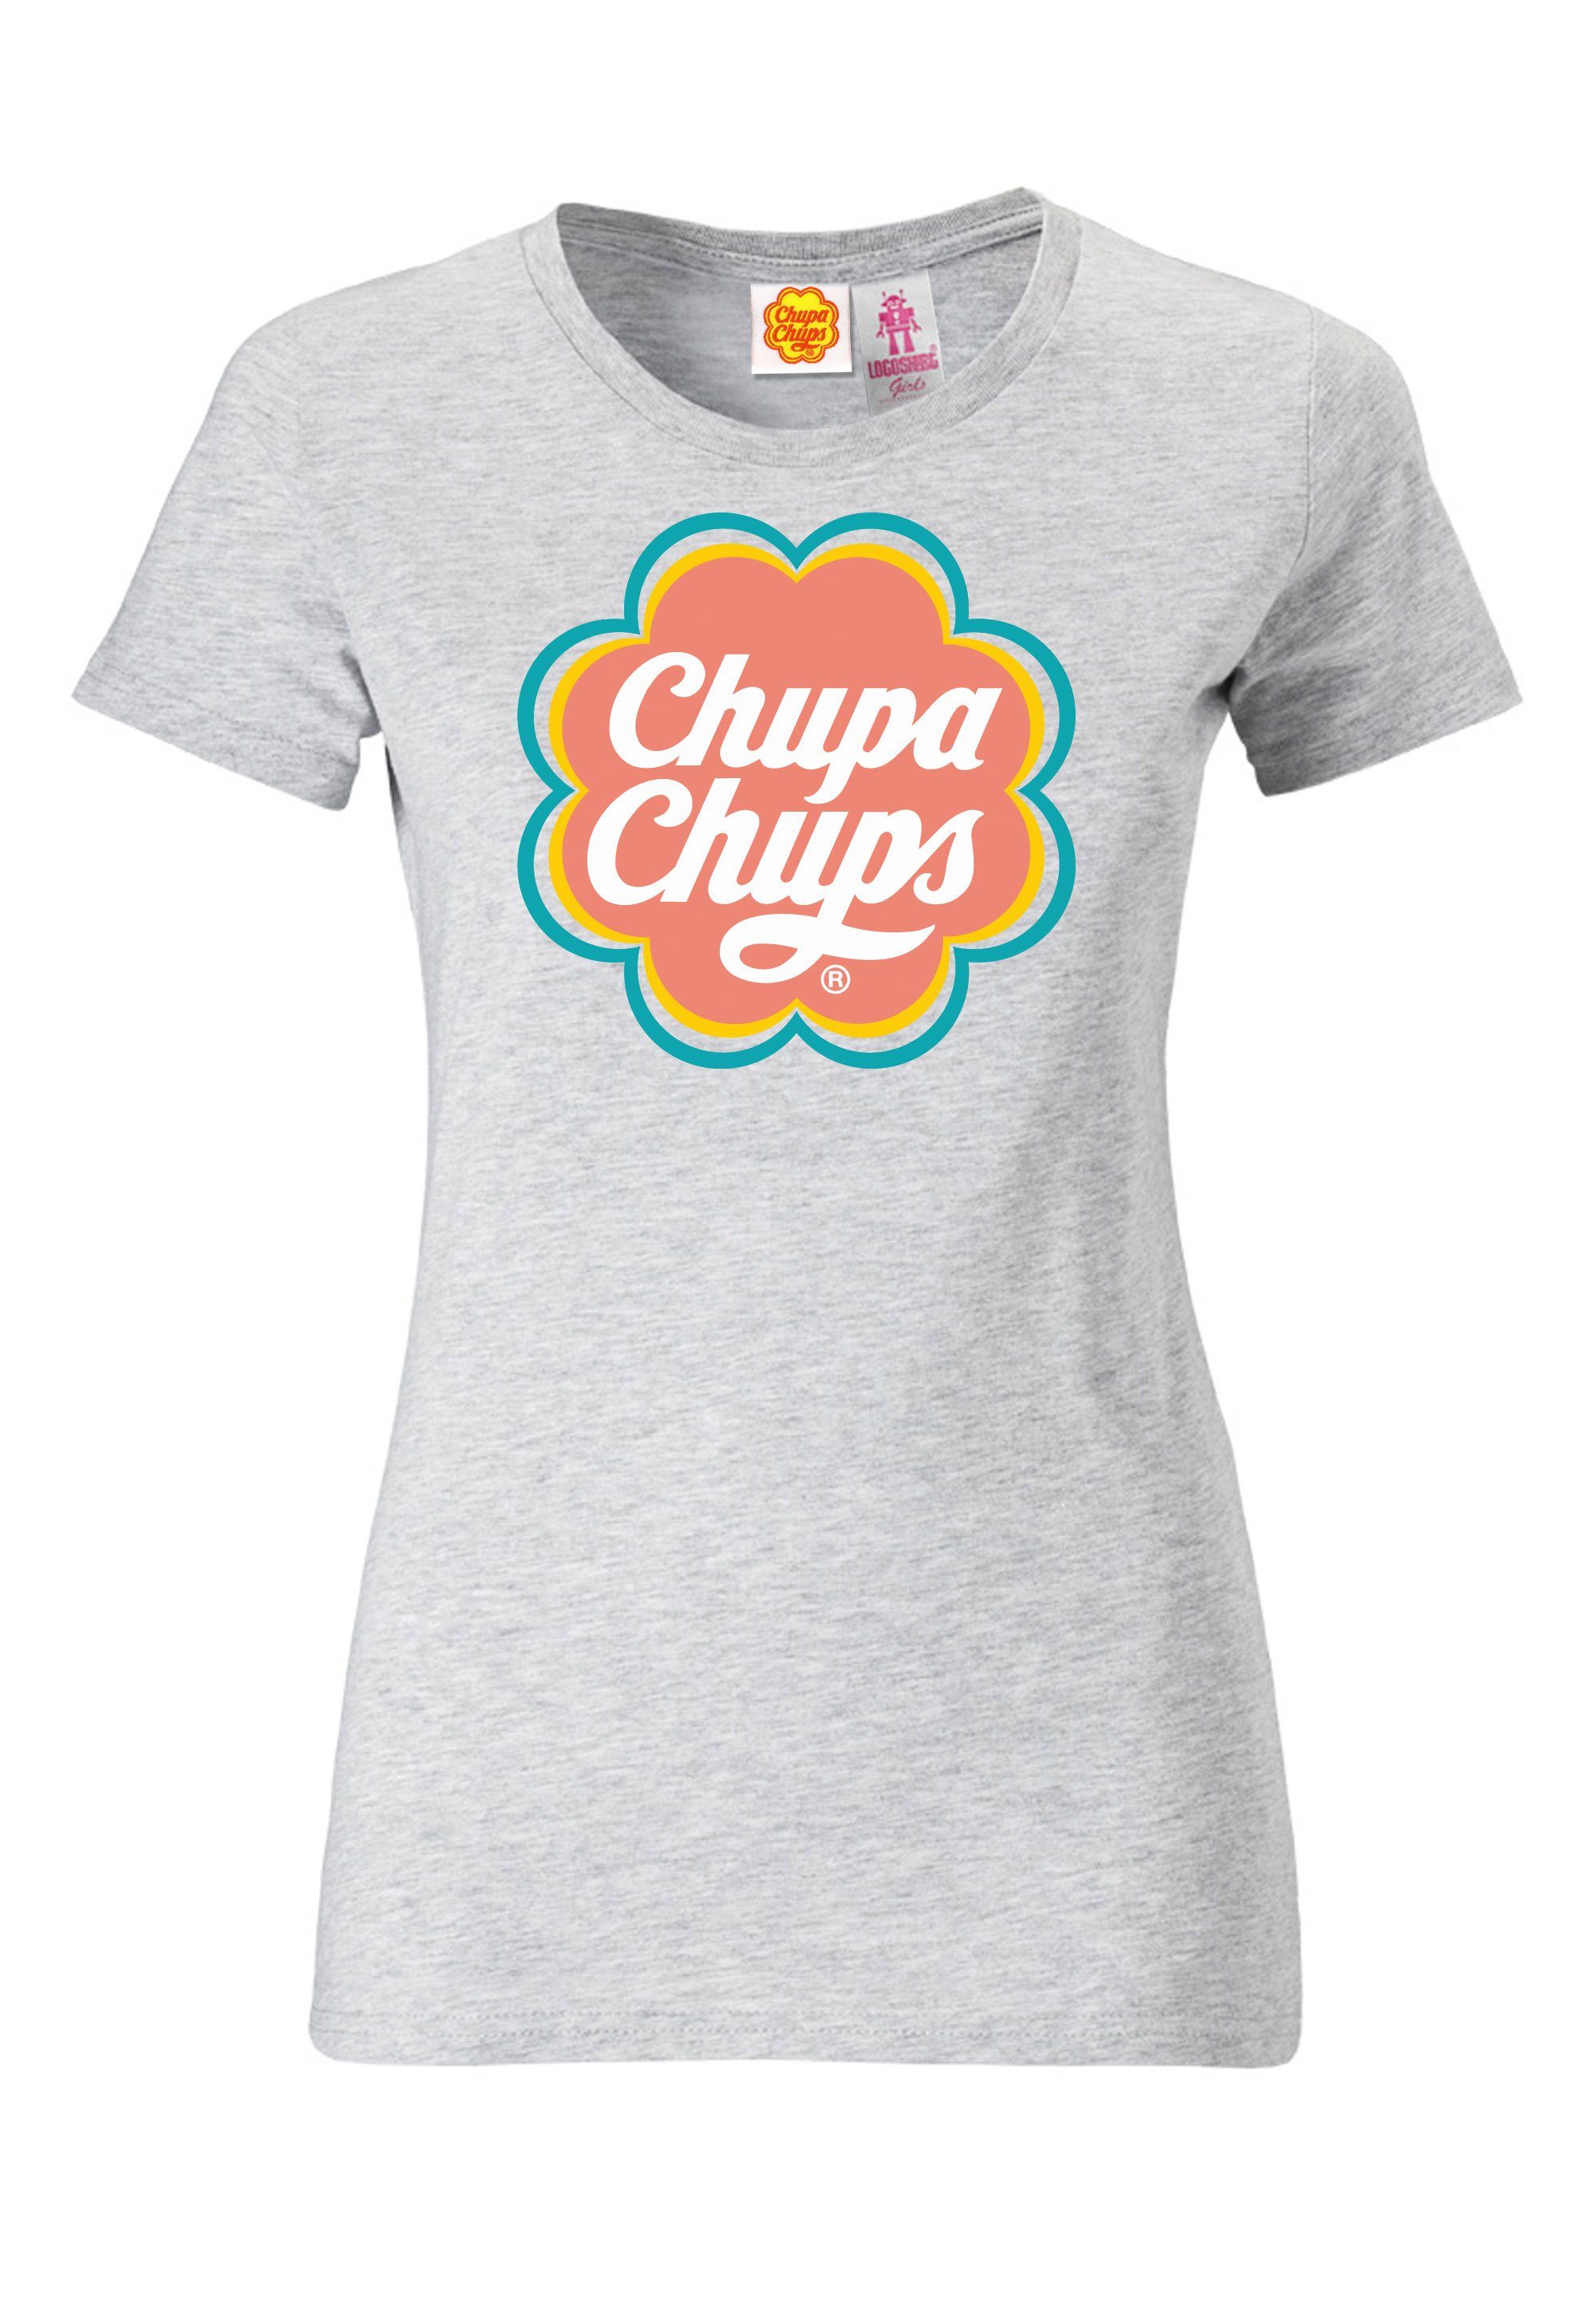 mit LOGOSHIRT Chupa Chups lizenzierten T-Shirt Design